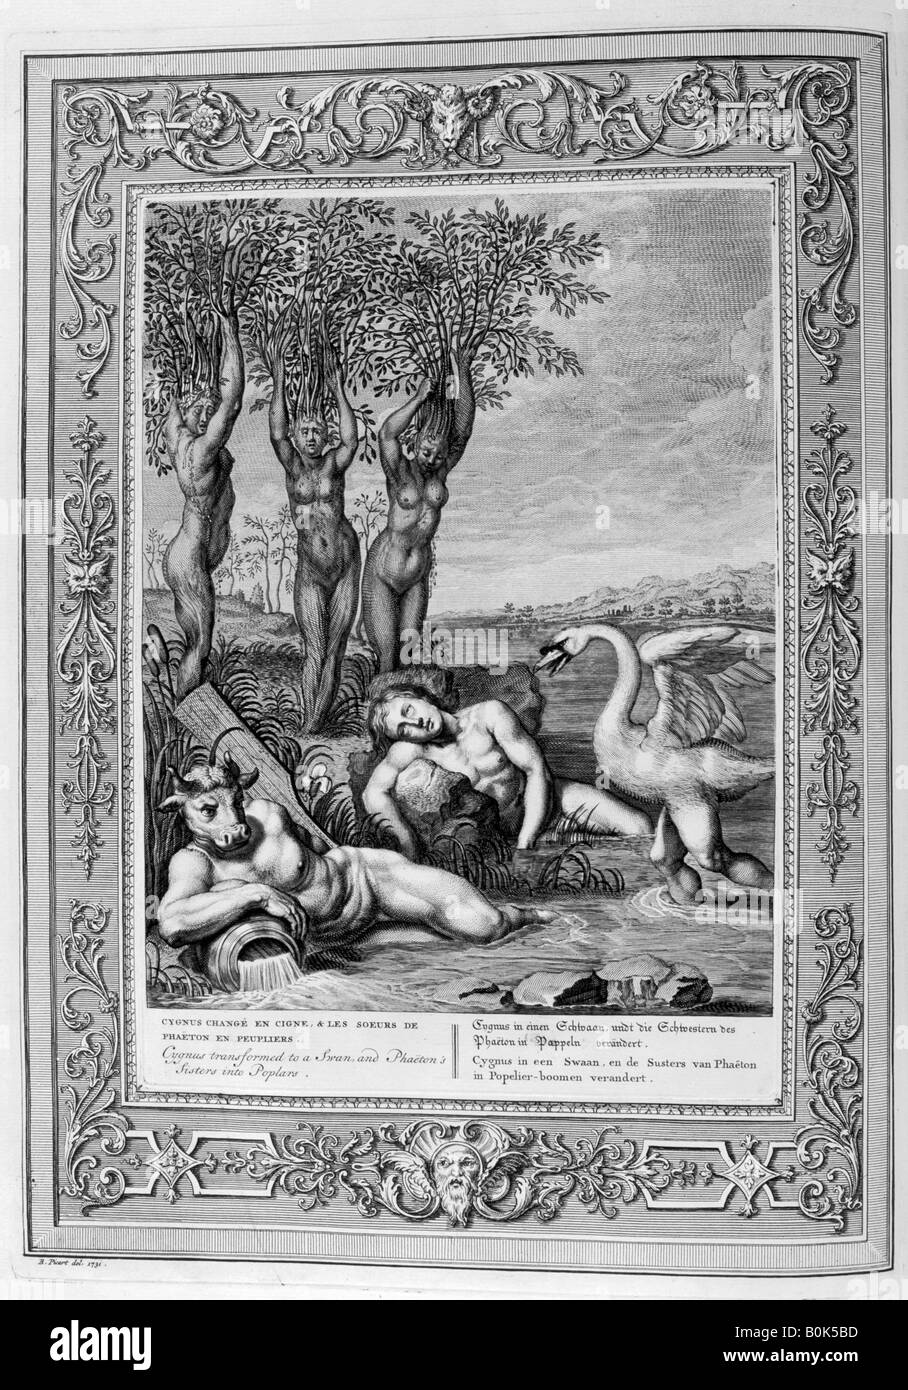 Cygnus transformé en un cygne et les sœurs de Phaeton dans les peupliers, 1733. Artiste : Bernard Picart Banque D'Images